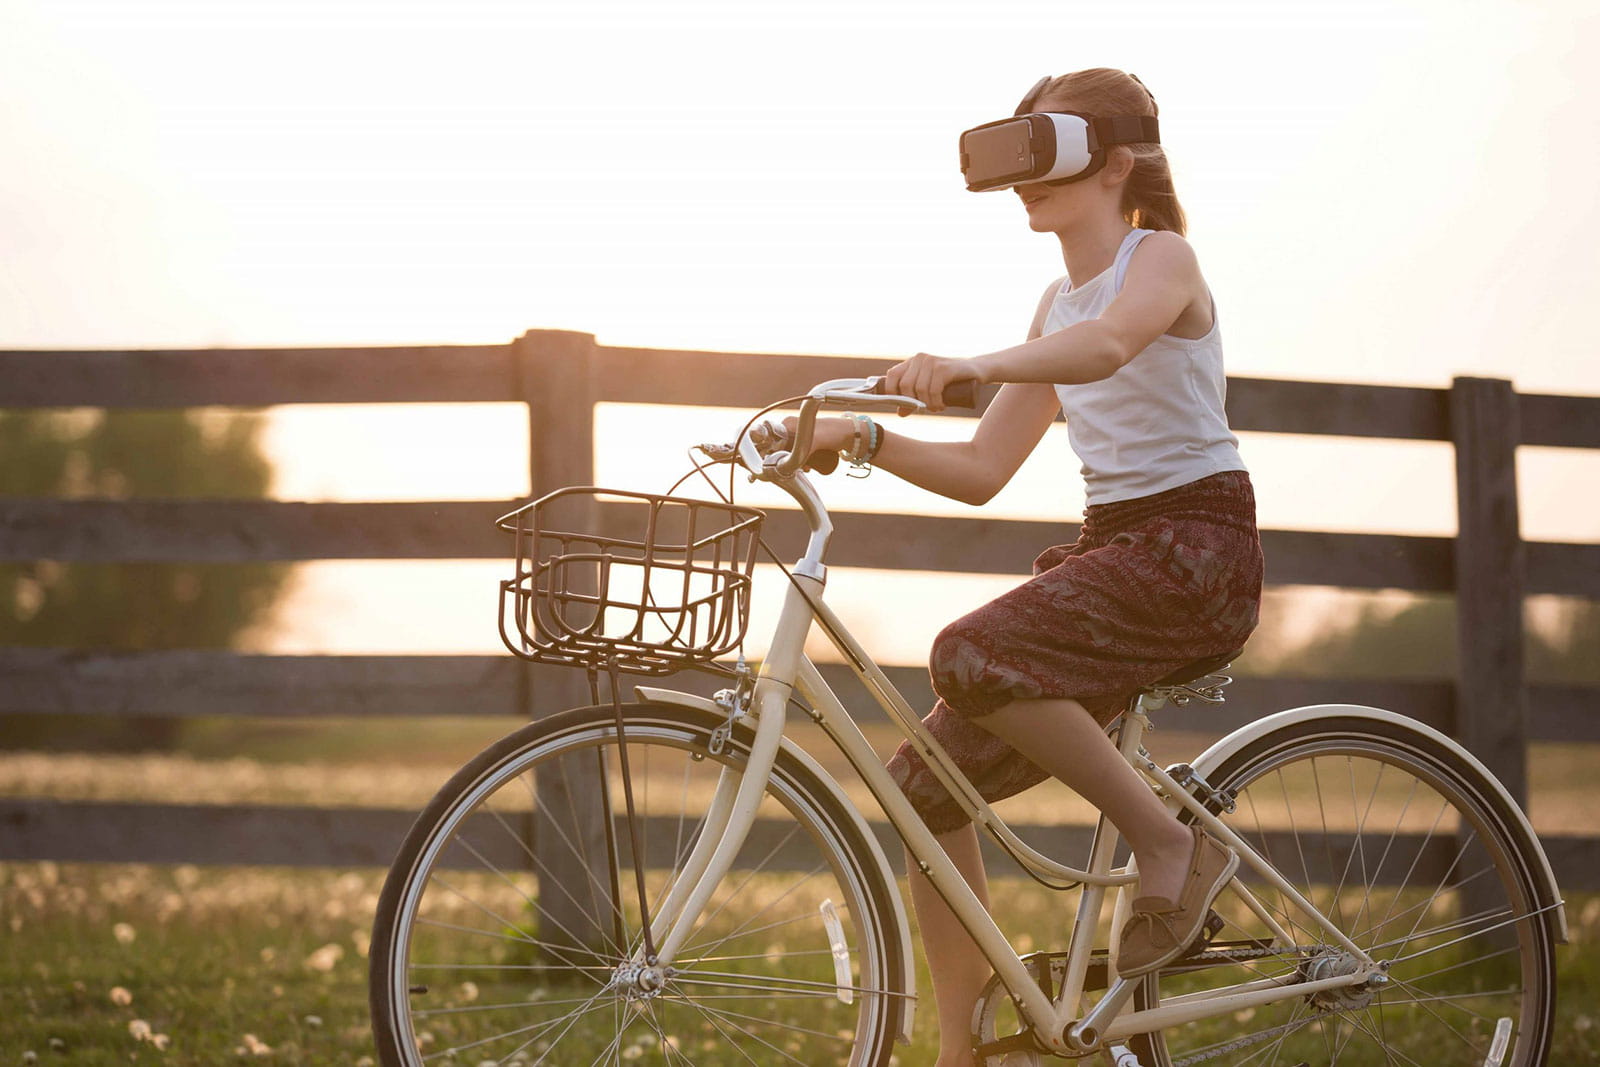 Formation au soudage en réalité virtuelle : les 5 avantages